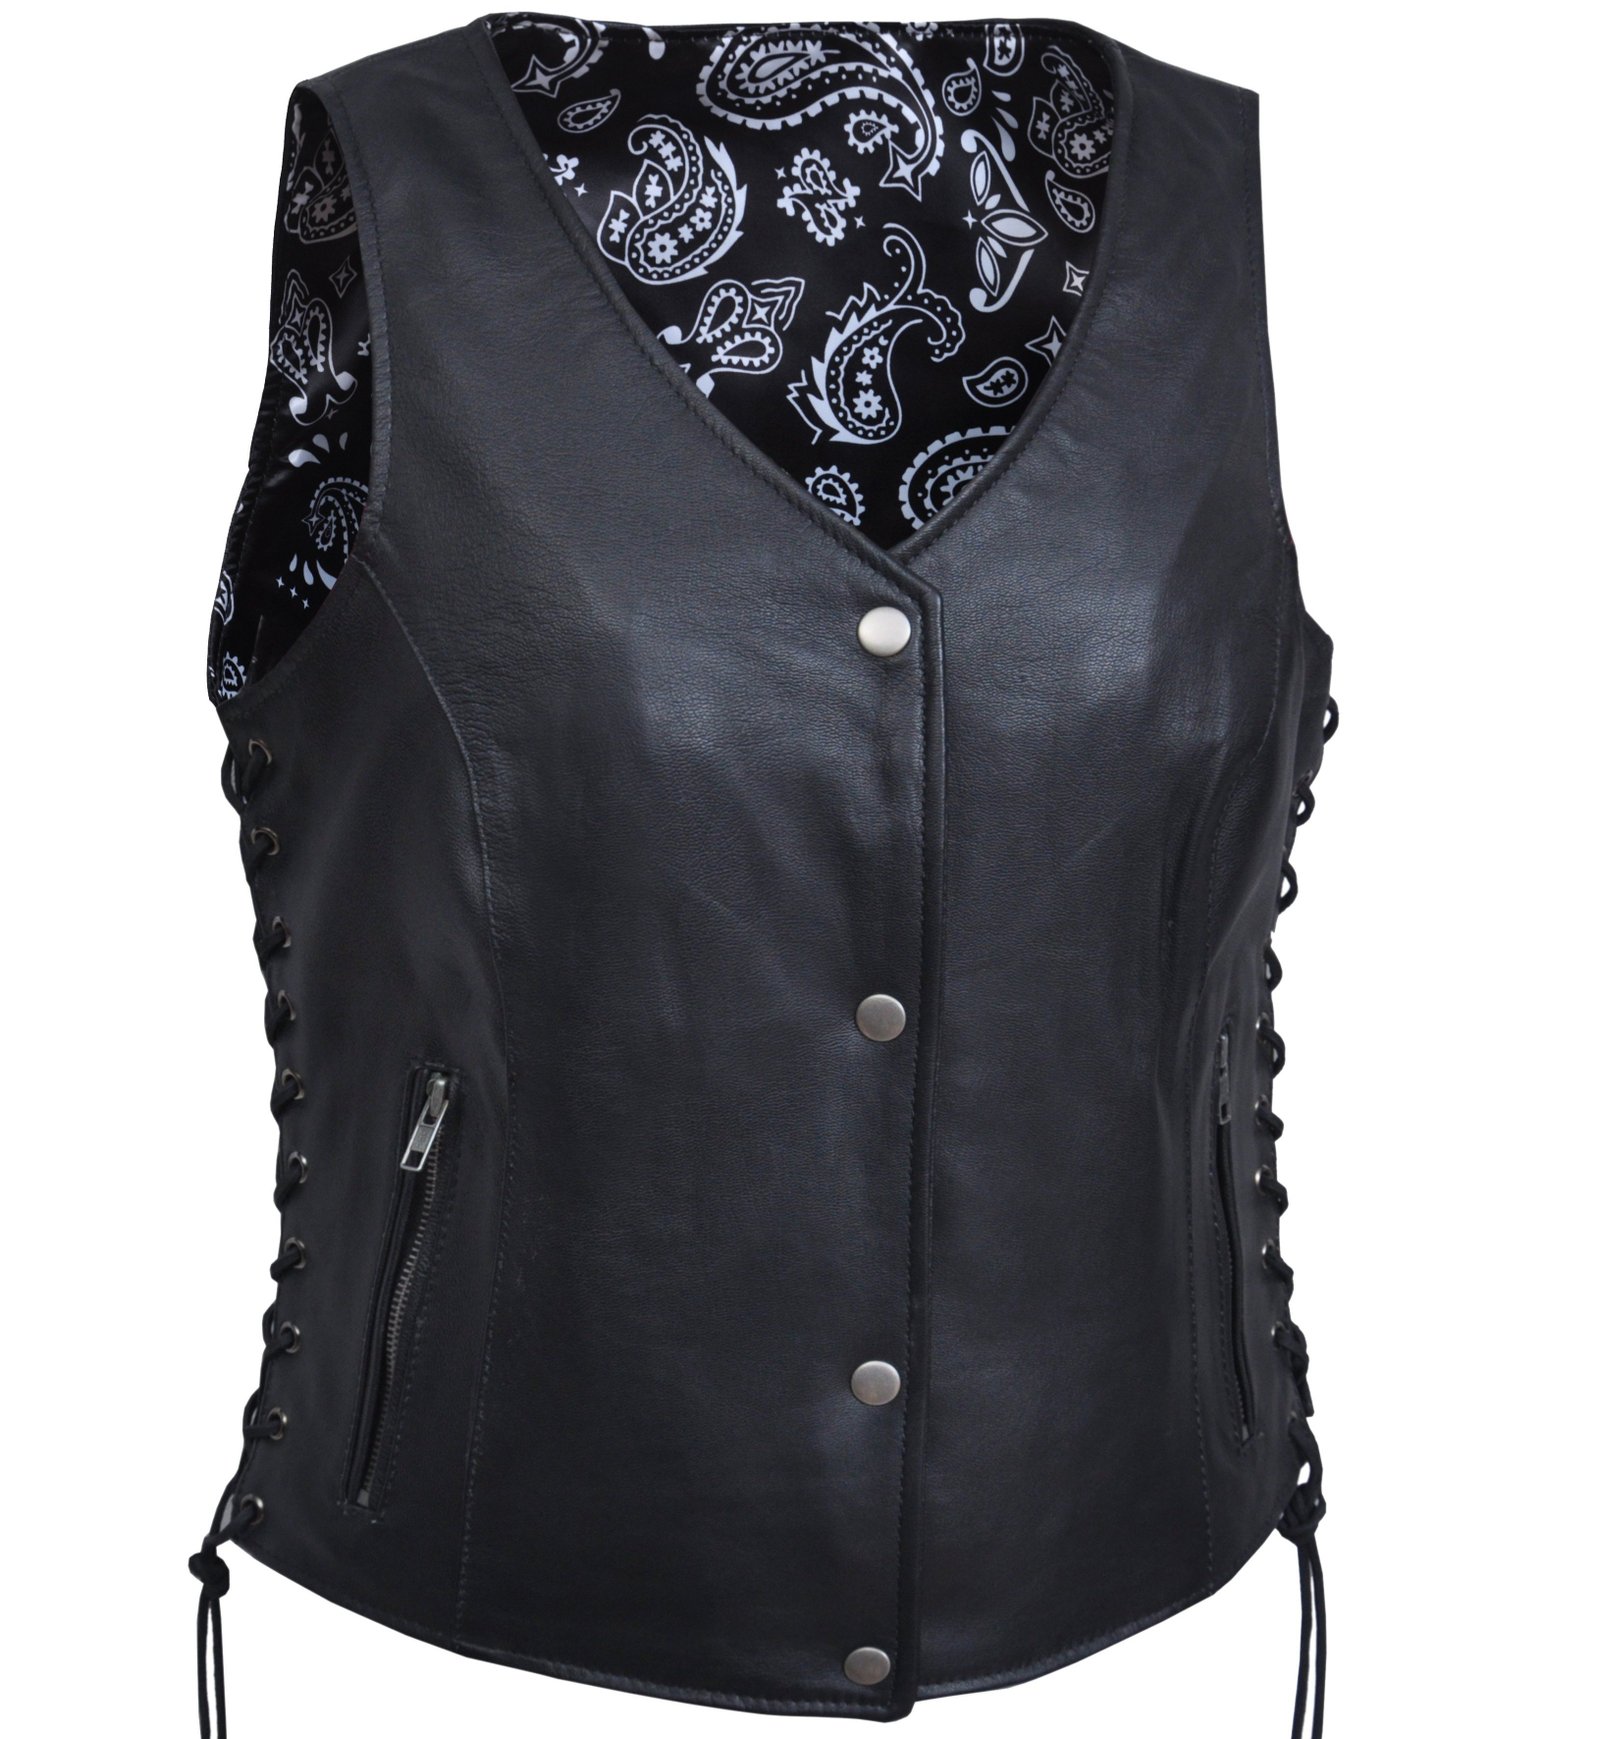 Leather Vest - Women's - Black Paisley Lining - Side Laces - 6890-00-UN